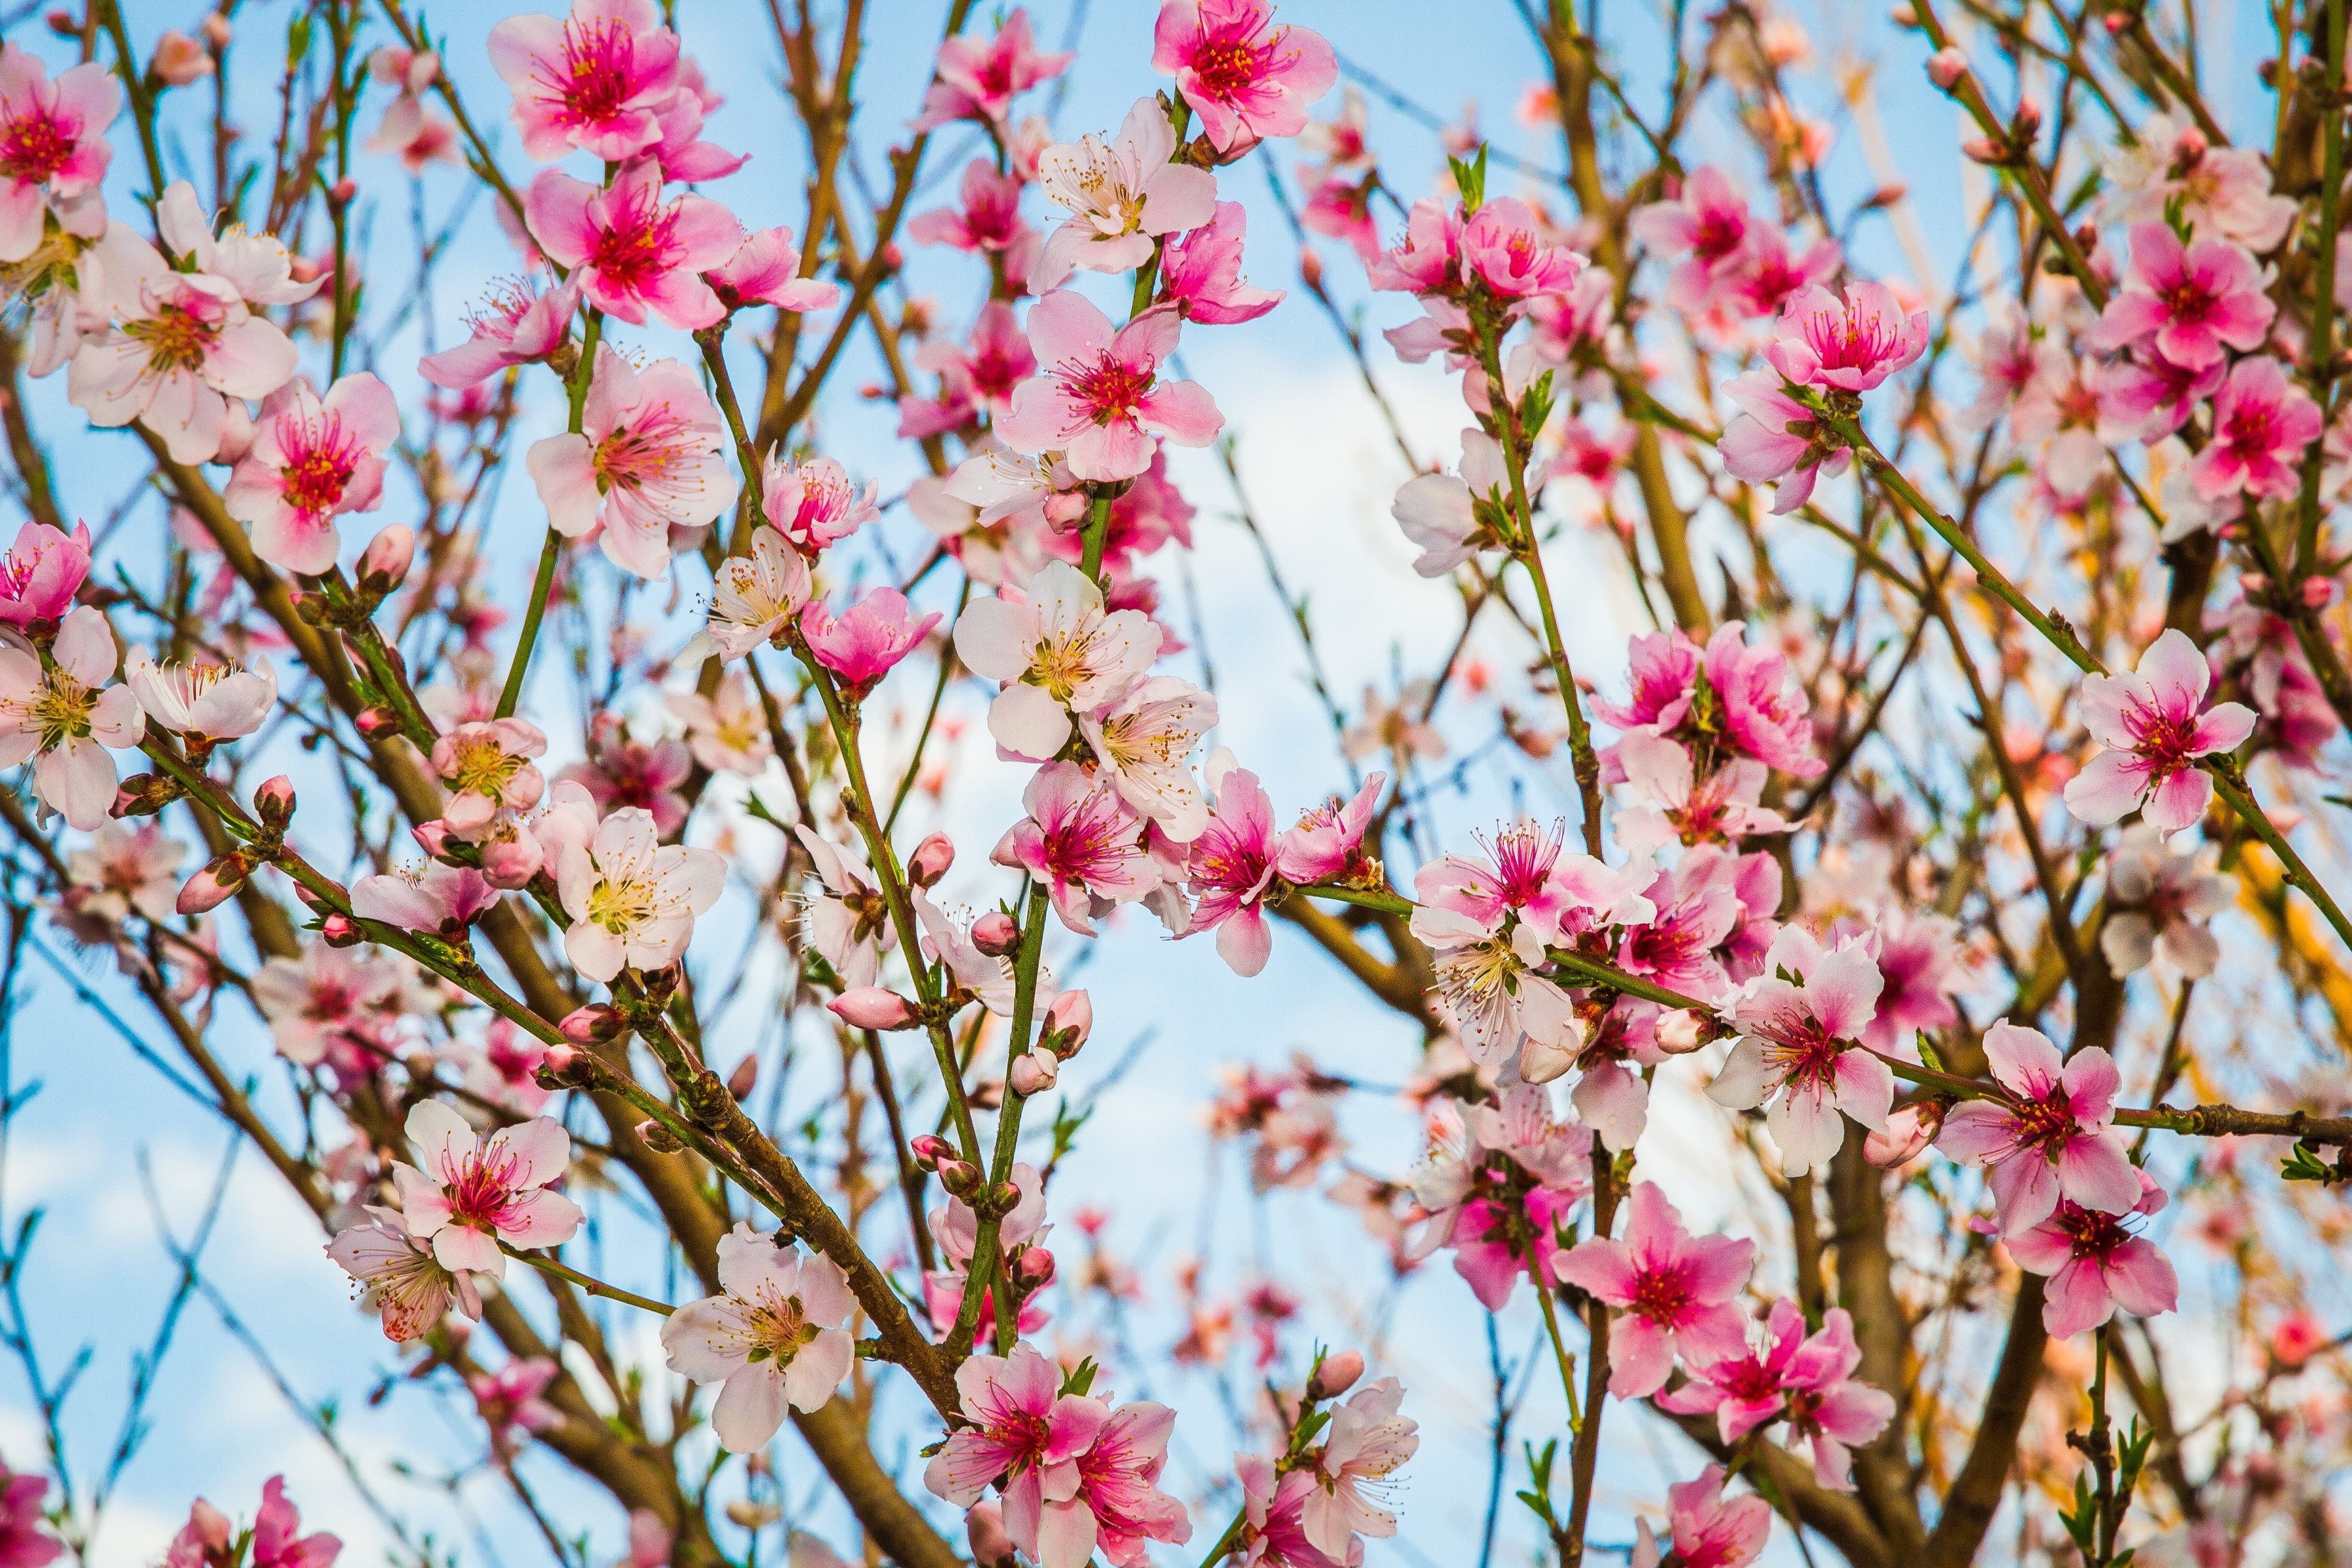 Что цветет в крыму розовым цветом. Персик дерево цветение. Цветение миндаля в Крыму. «Персиковое дерево в цвету» (1888,музей крёллер — Мюллер, Отерло). Цветение персикового дерева весной.